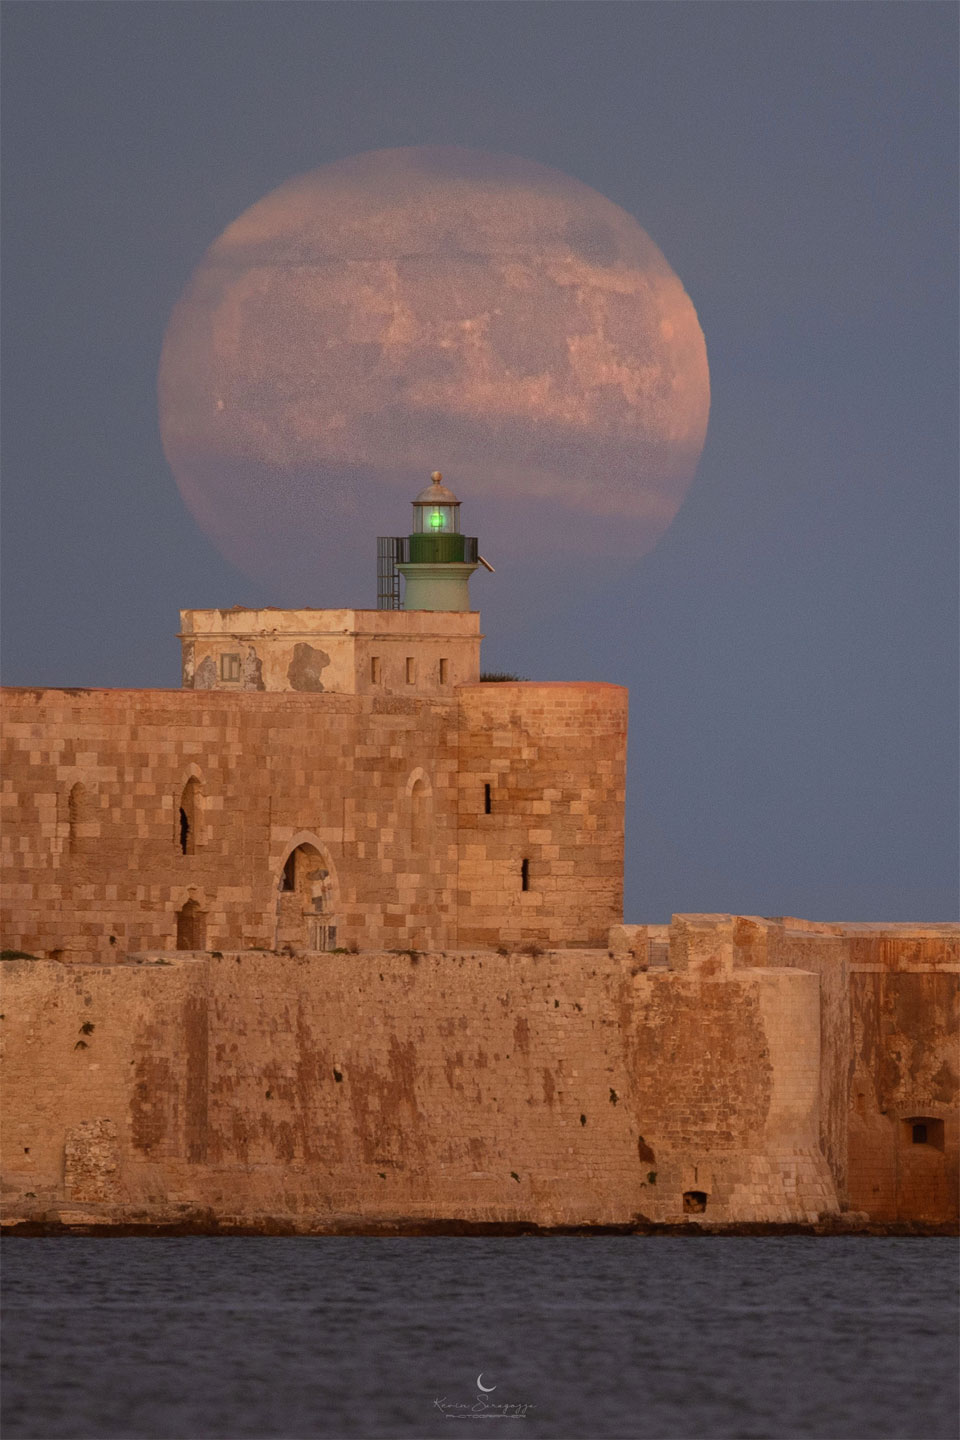 A large Moon is seen behind a historic stone structure. 
Więcej szczegółowych informacji w opisie poniżej.